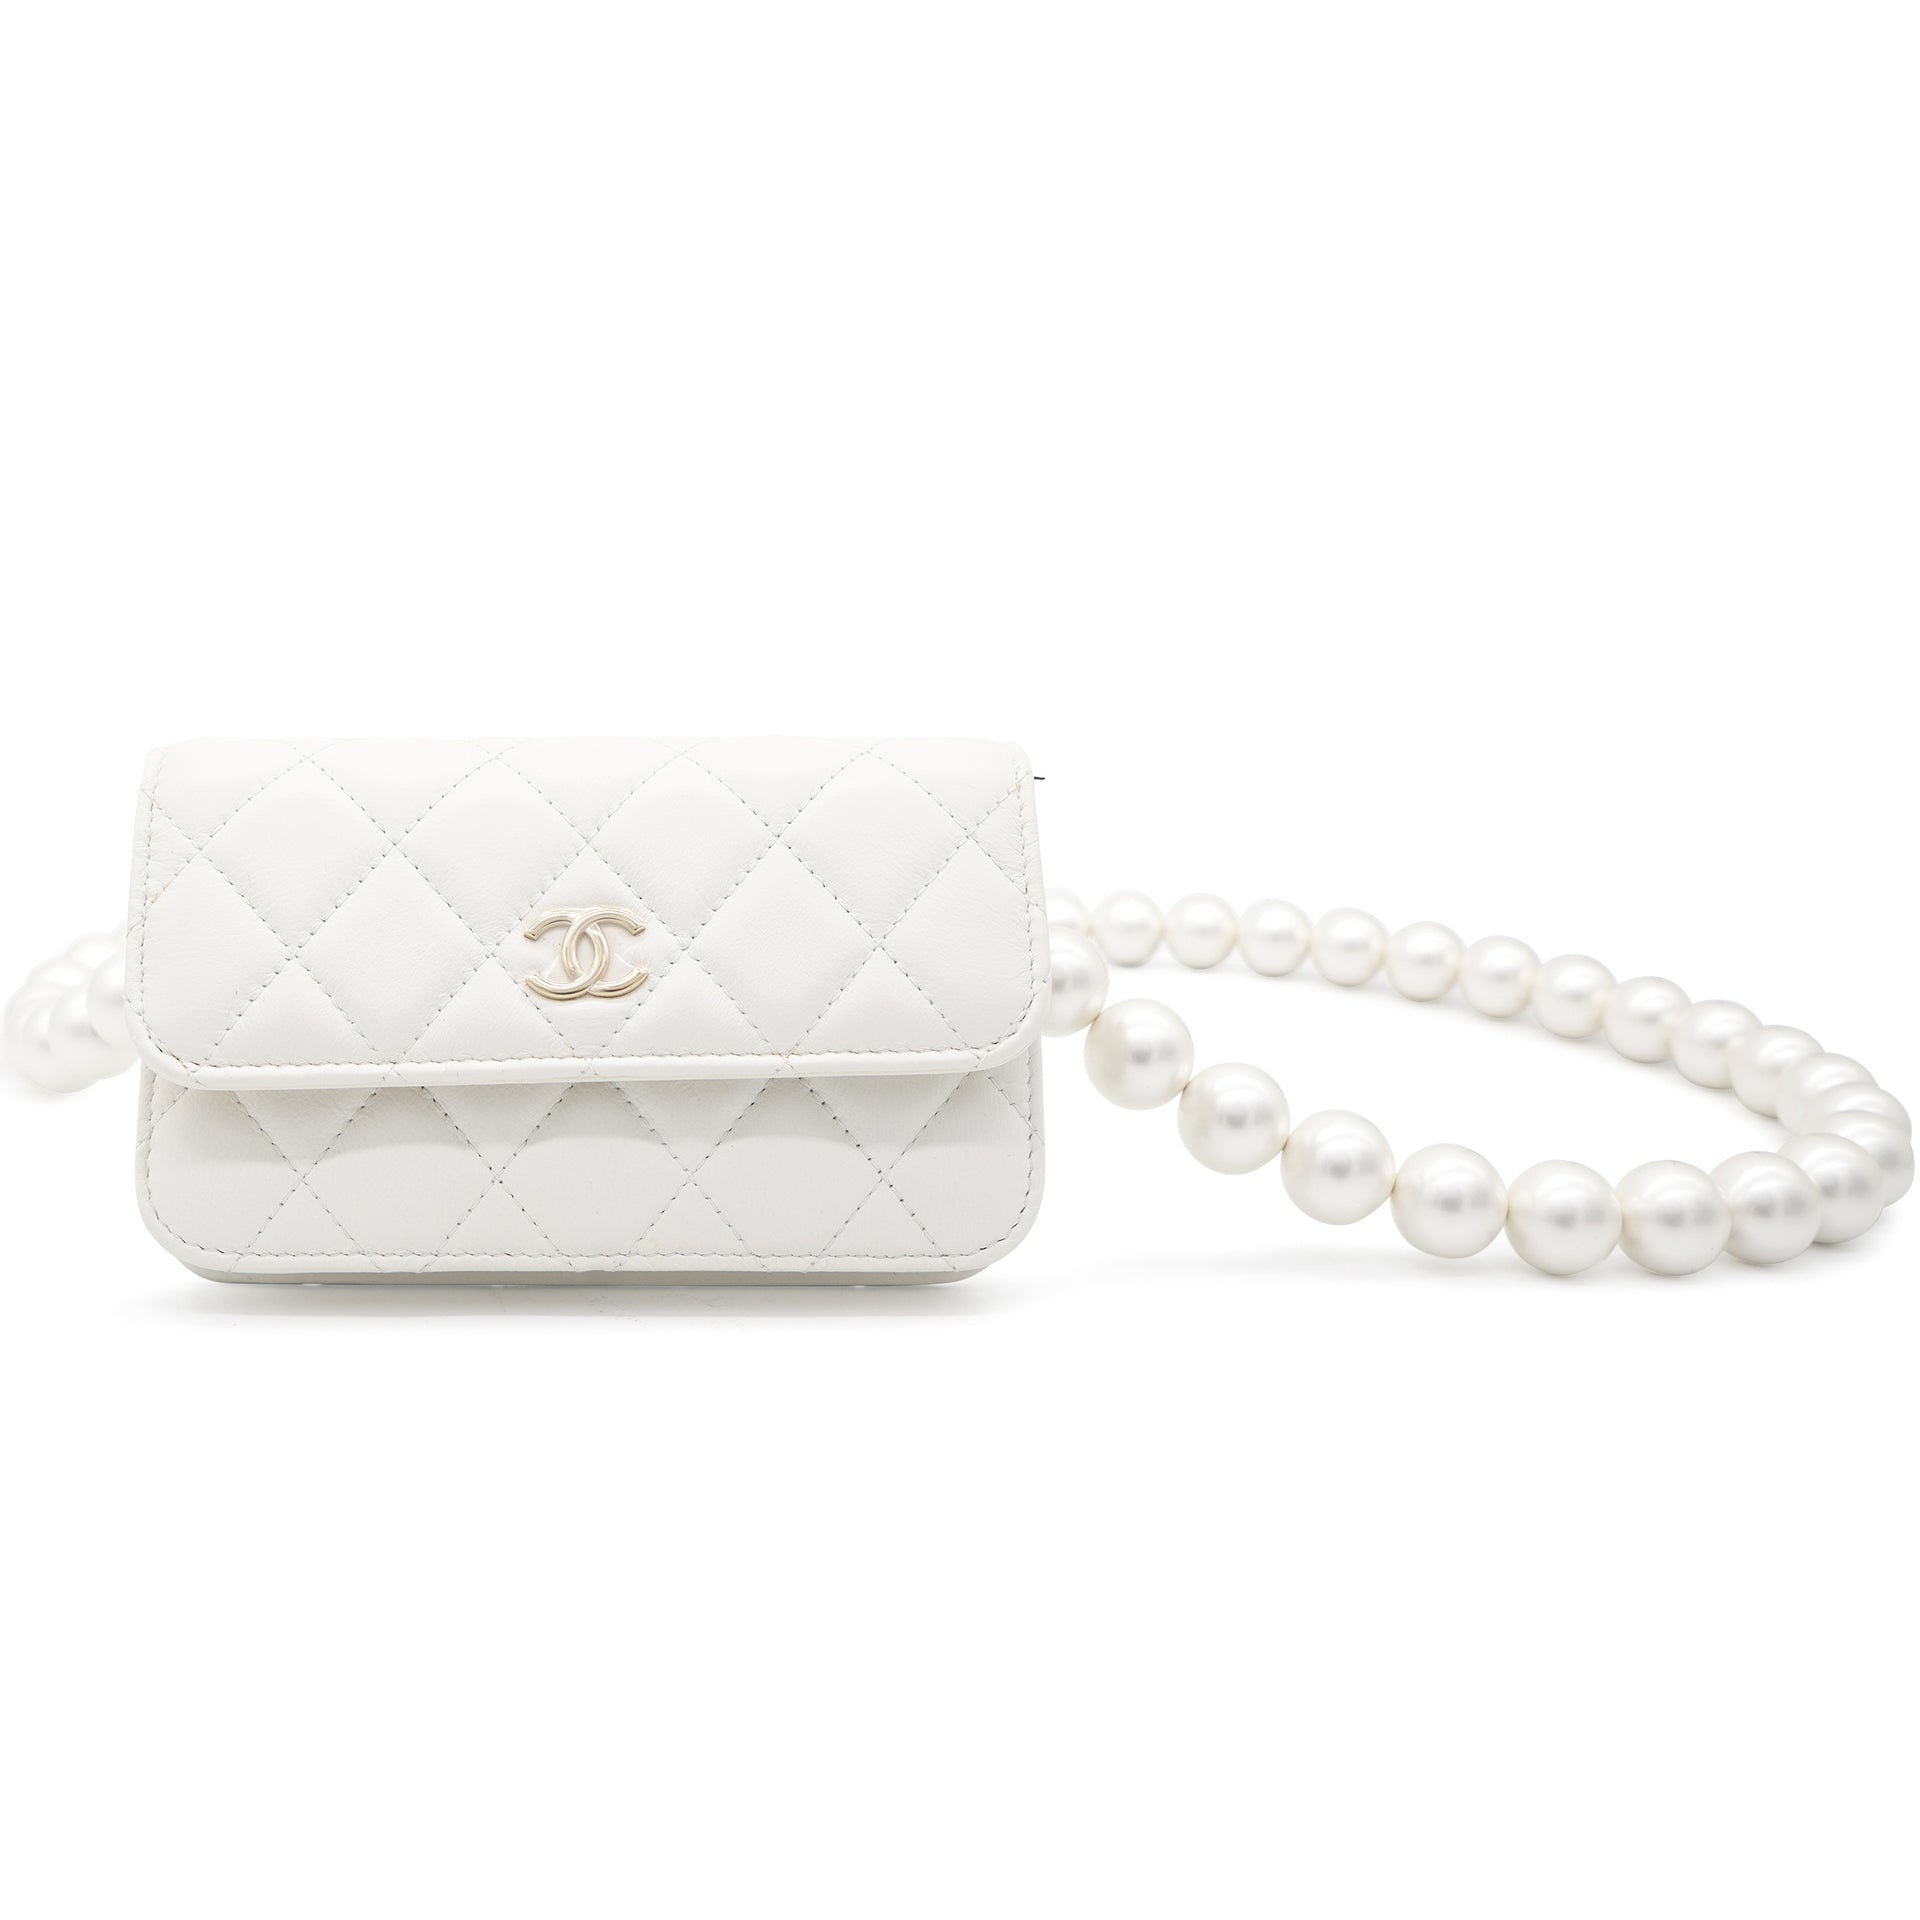 Chanel Mini WOC Wallet On Chain Bag Thumb  Nice Bag